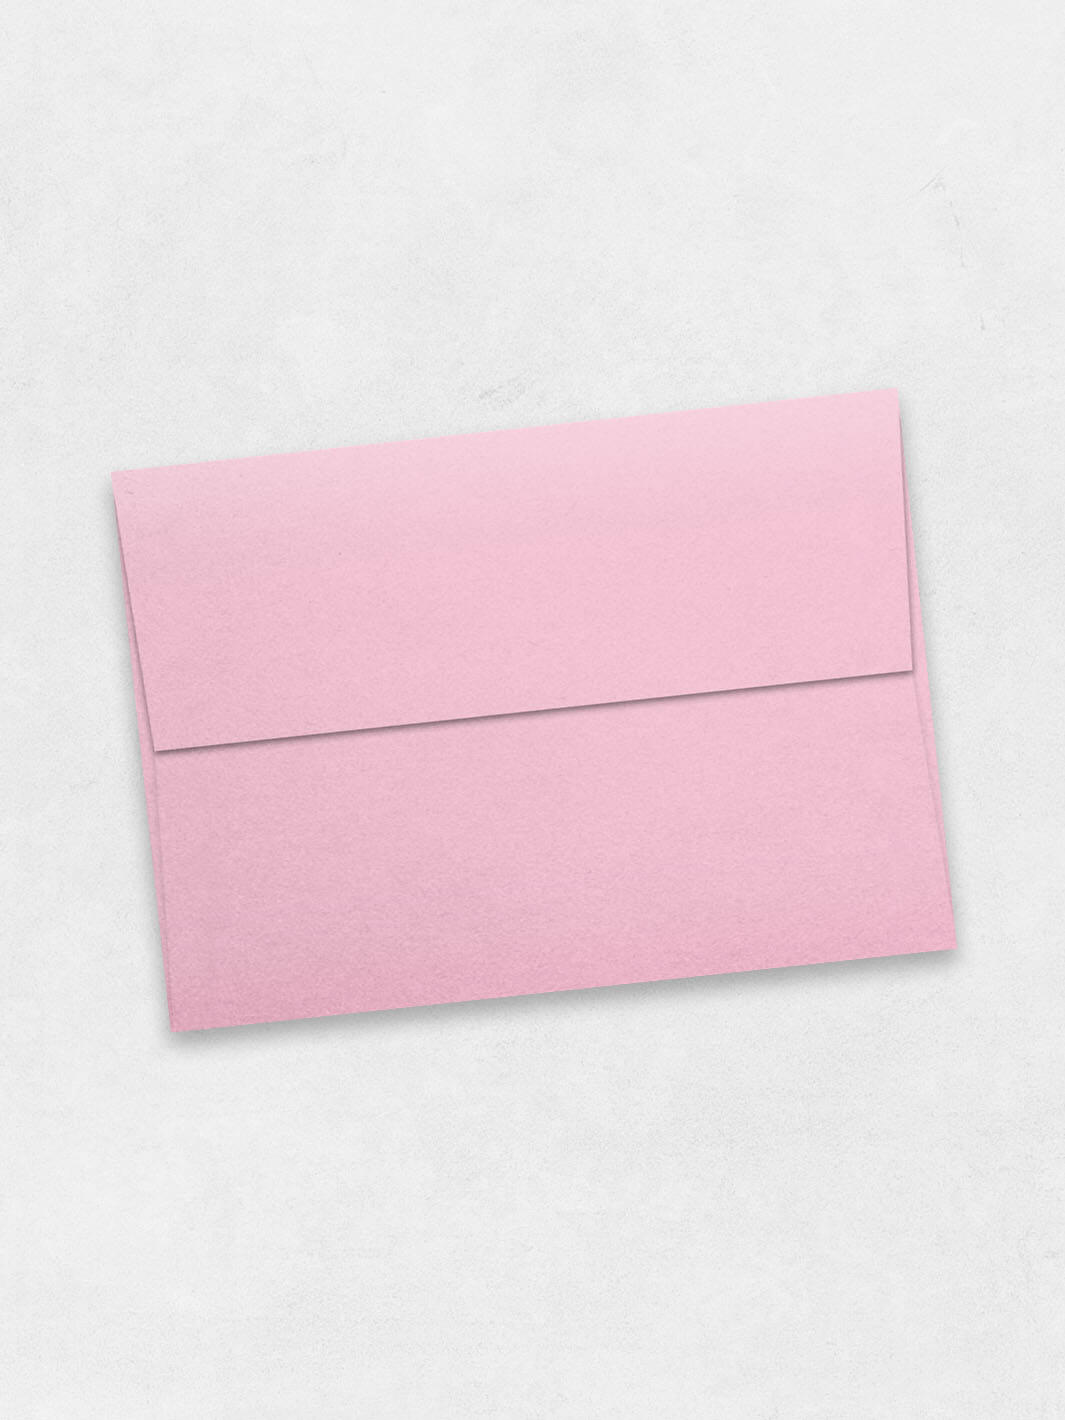 rose quartz metallic colored envelope